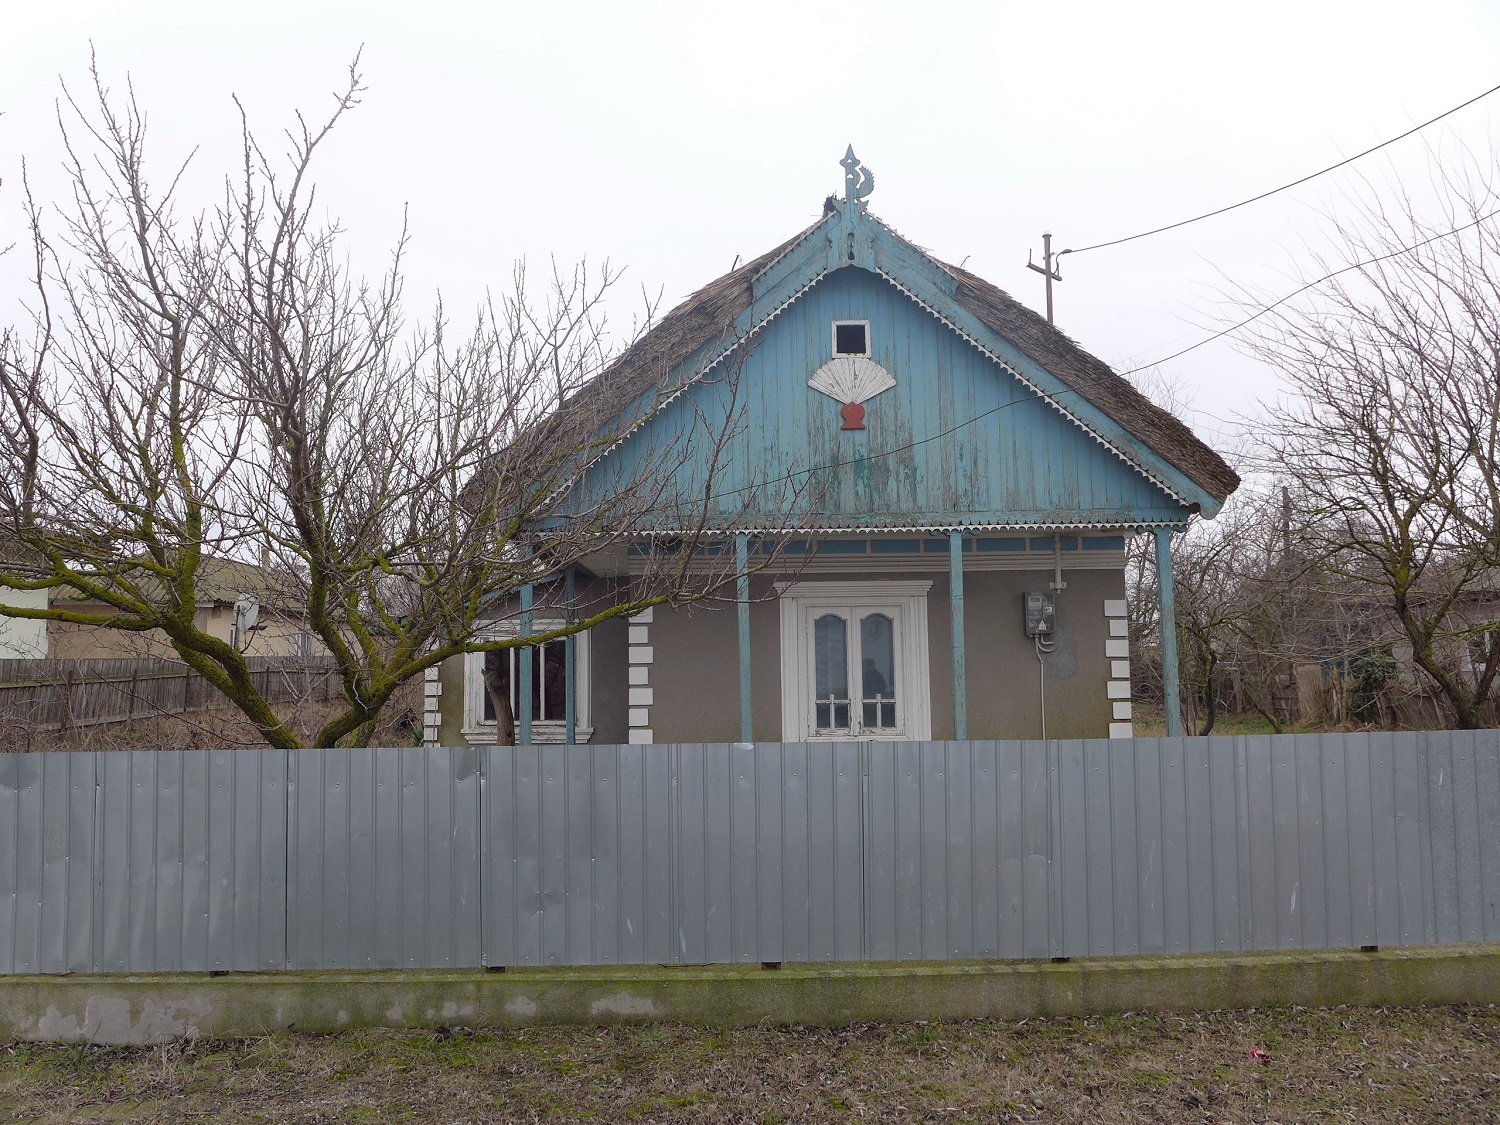 Maison traditionnelle de Crisan, avec le toit en roseau.